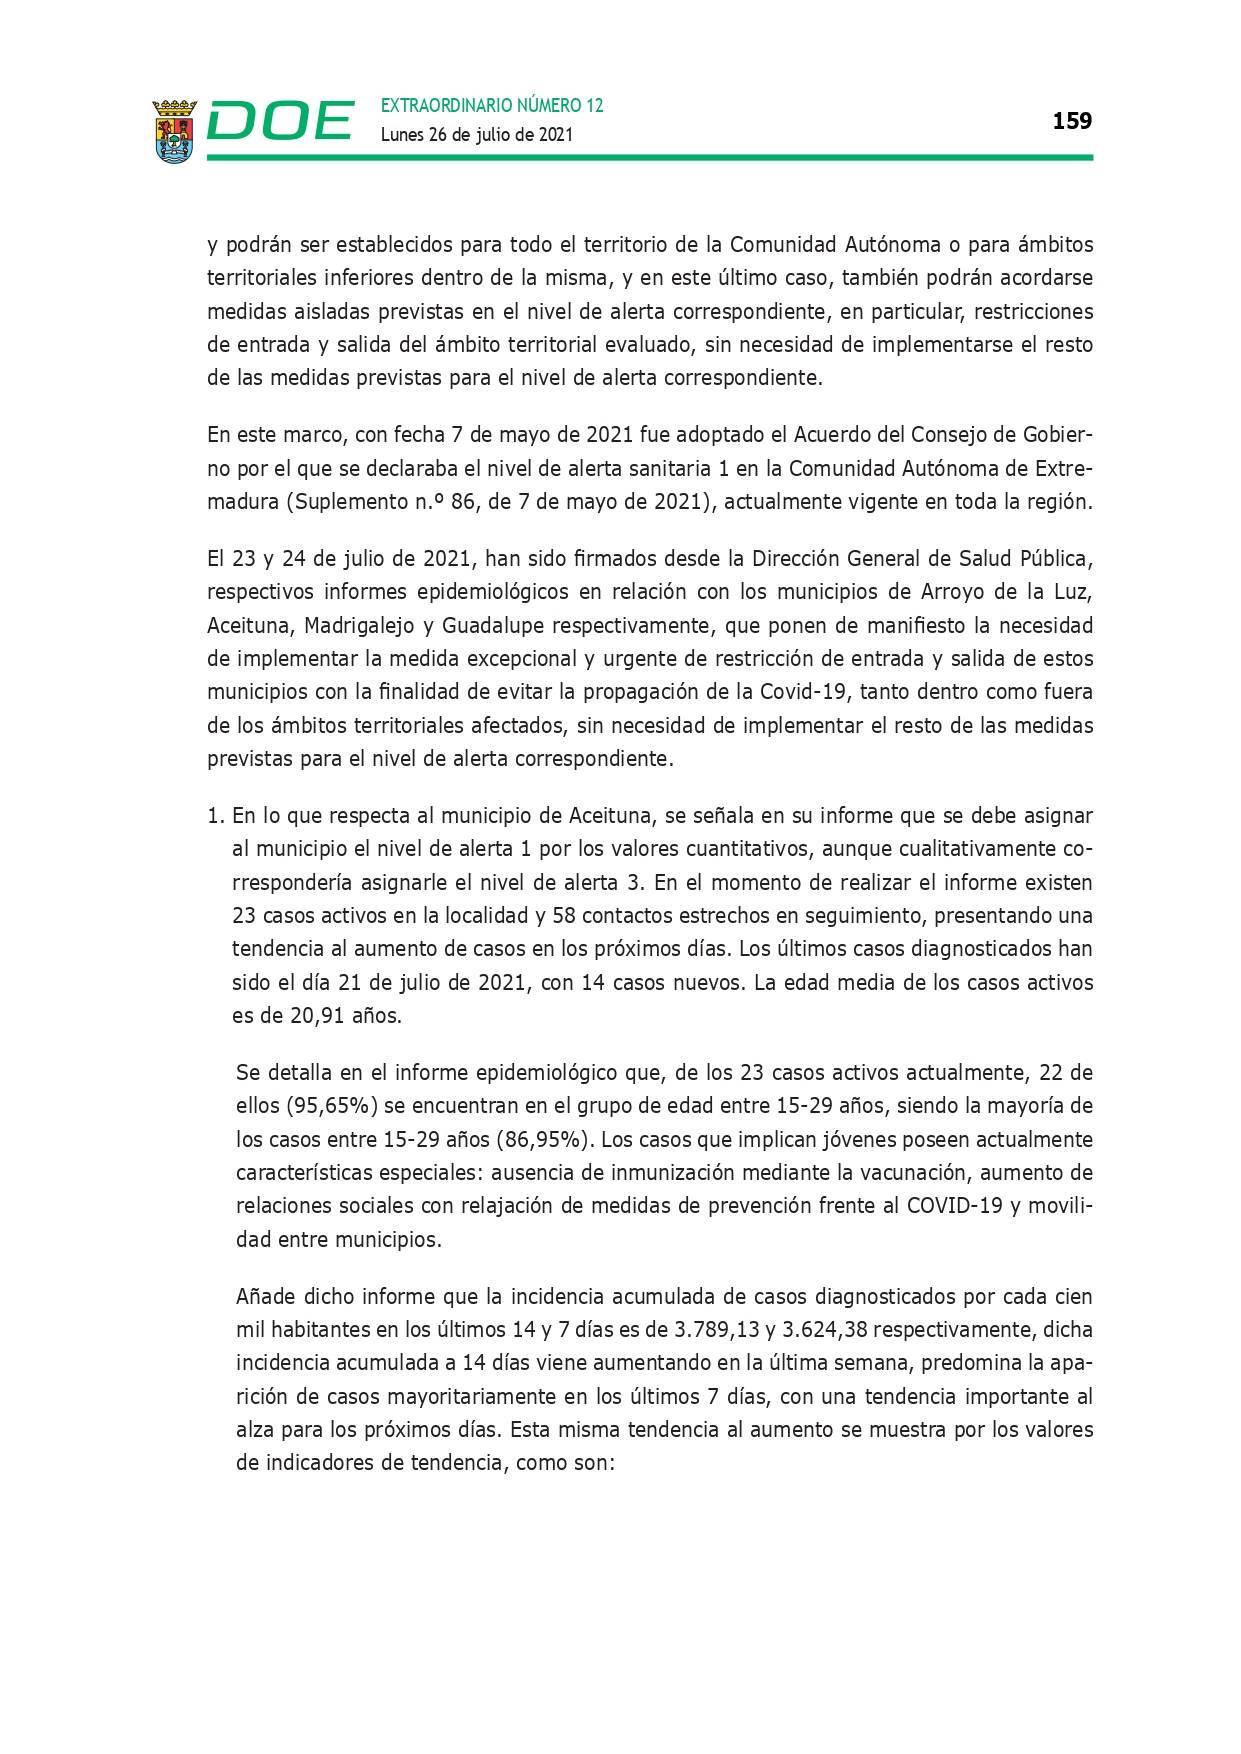 Restricción de la entrada y salida por COVID-19 (julio 2021) - Guadalupe (Cáceres) 5